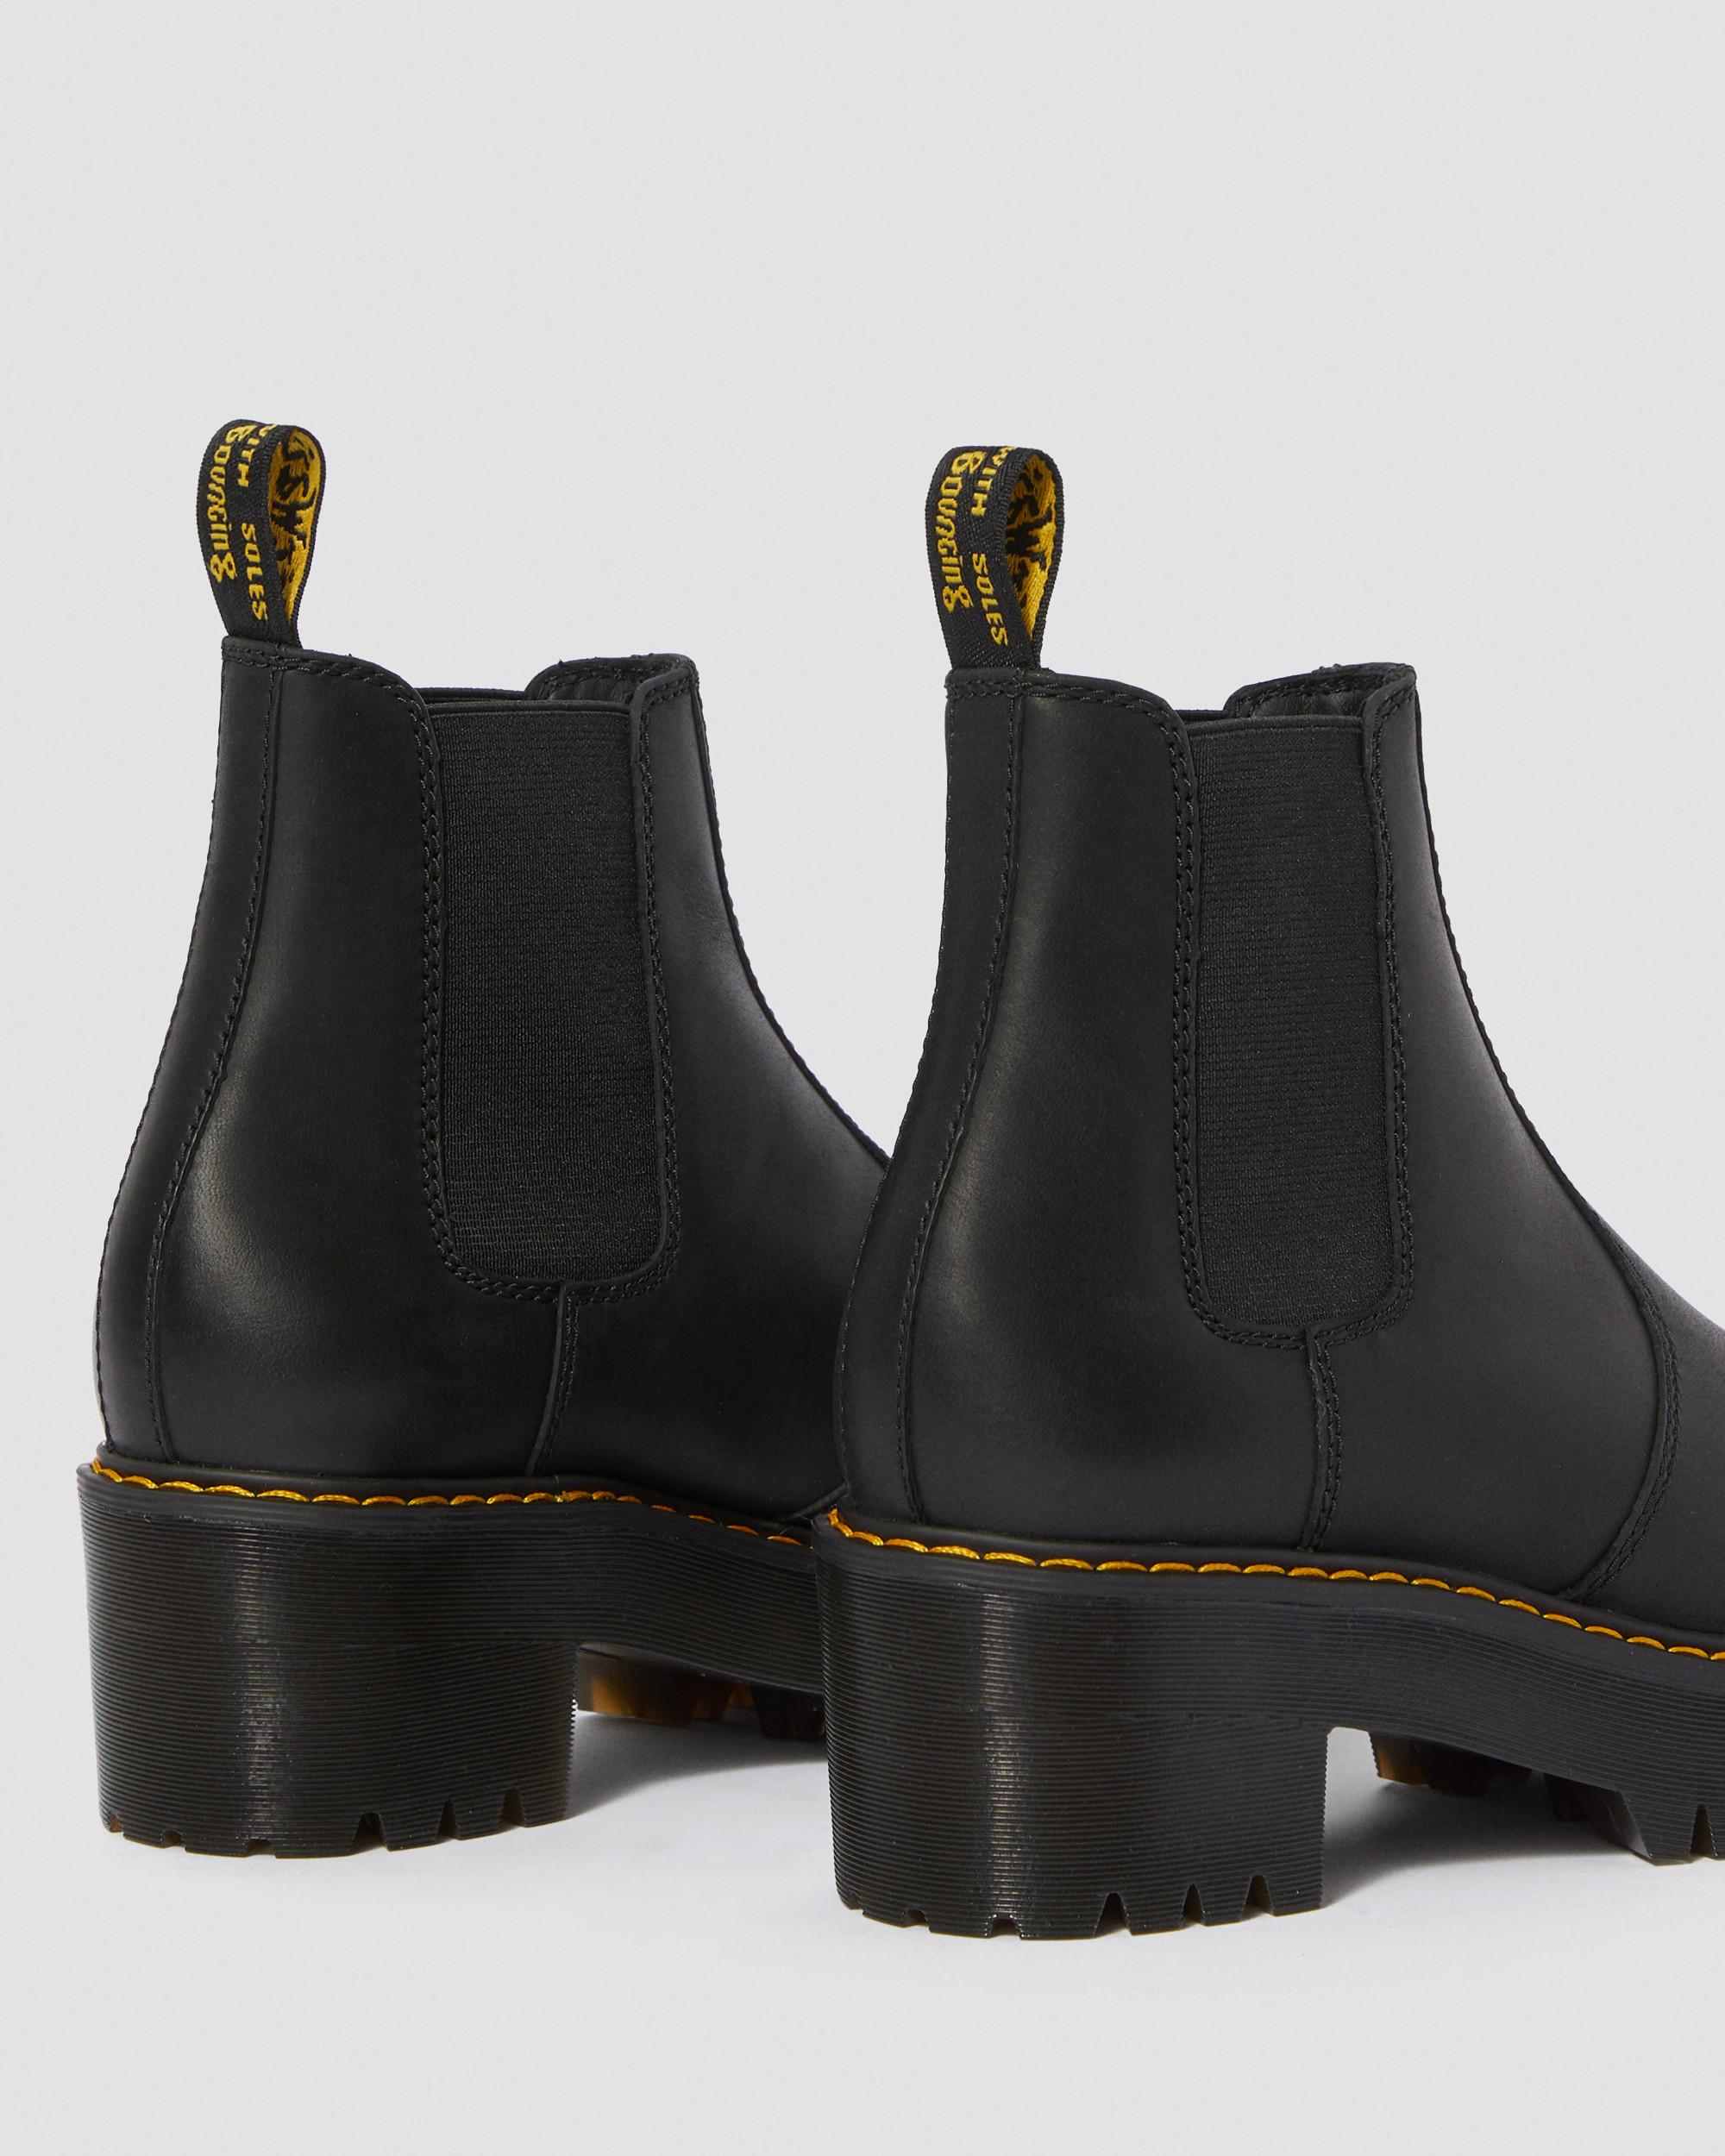 Schoenen Enkellaarsjes met hak Slip-on laarzen Zara Basic Slip-on laarzen zwart casual uitstraling 